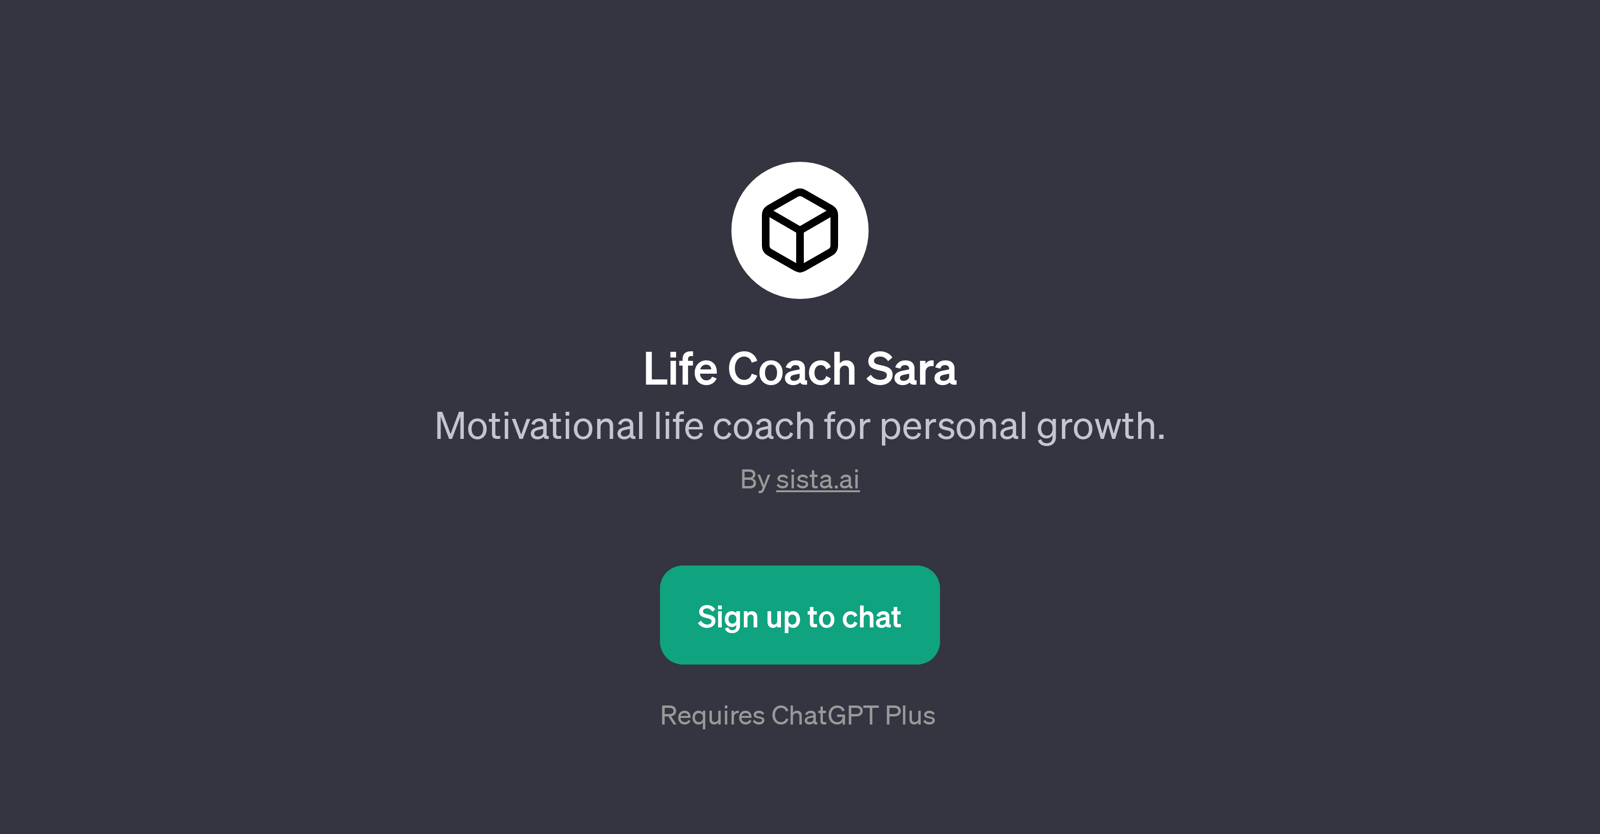 Life Coach Sara website